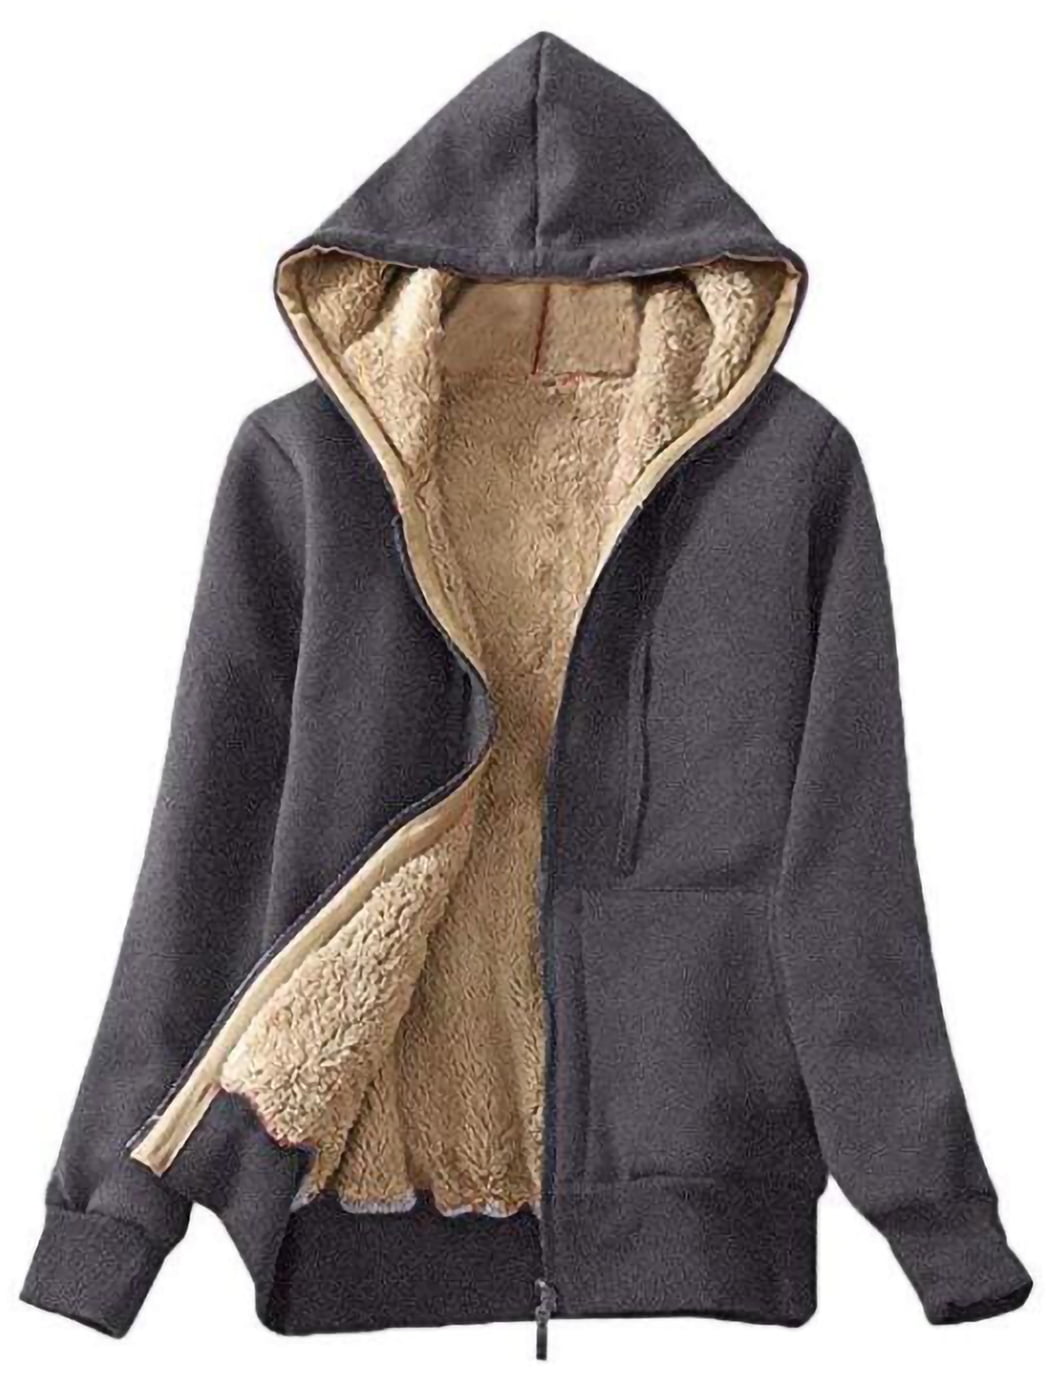 ZITY Womens Zip Up Hoodies Winter Fleece Jacket Sherpa Lined Warm Sweatshirt Outerwear